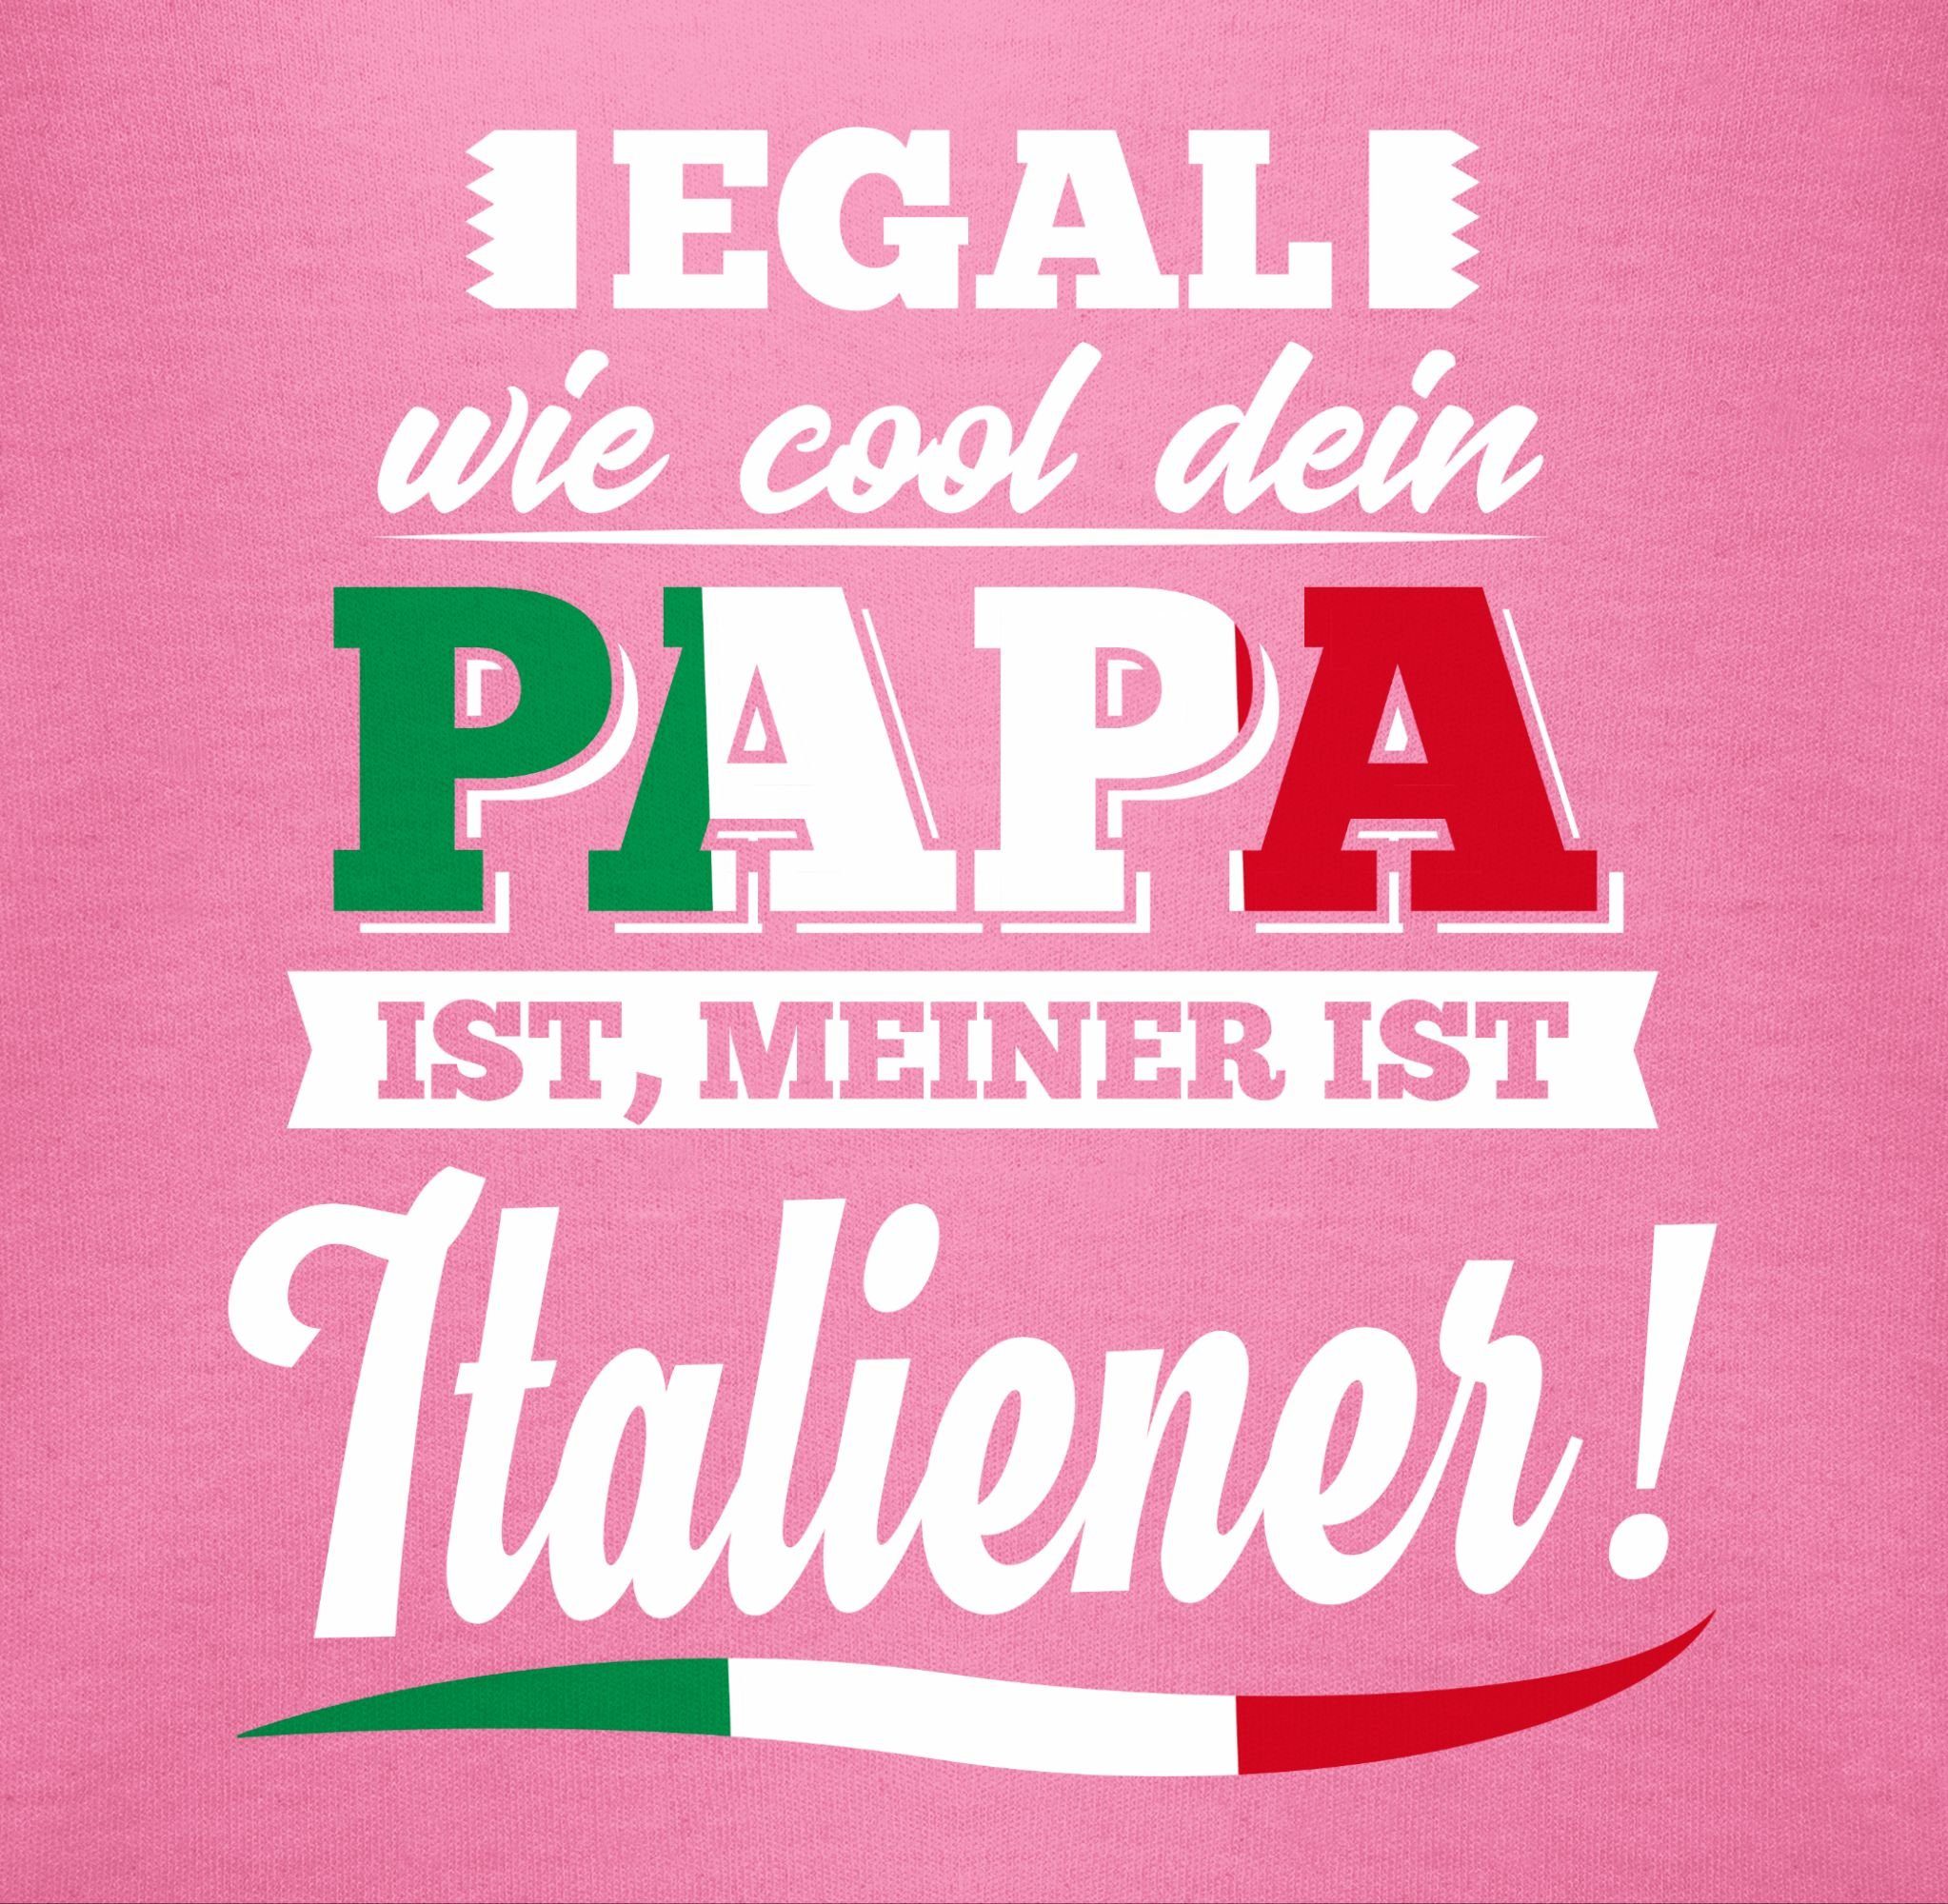 Cool Papa Egal Baby wie Sprüche ist dein Italiener Pink Shirtbody 2 meiner Shirtracer